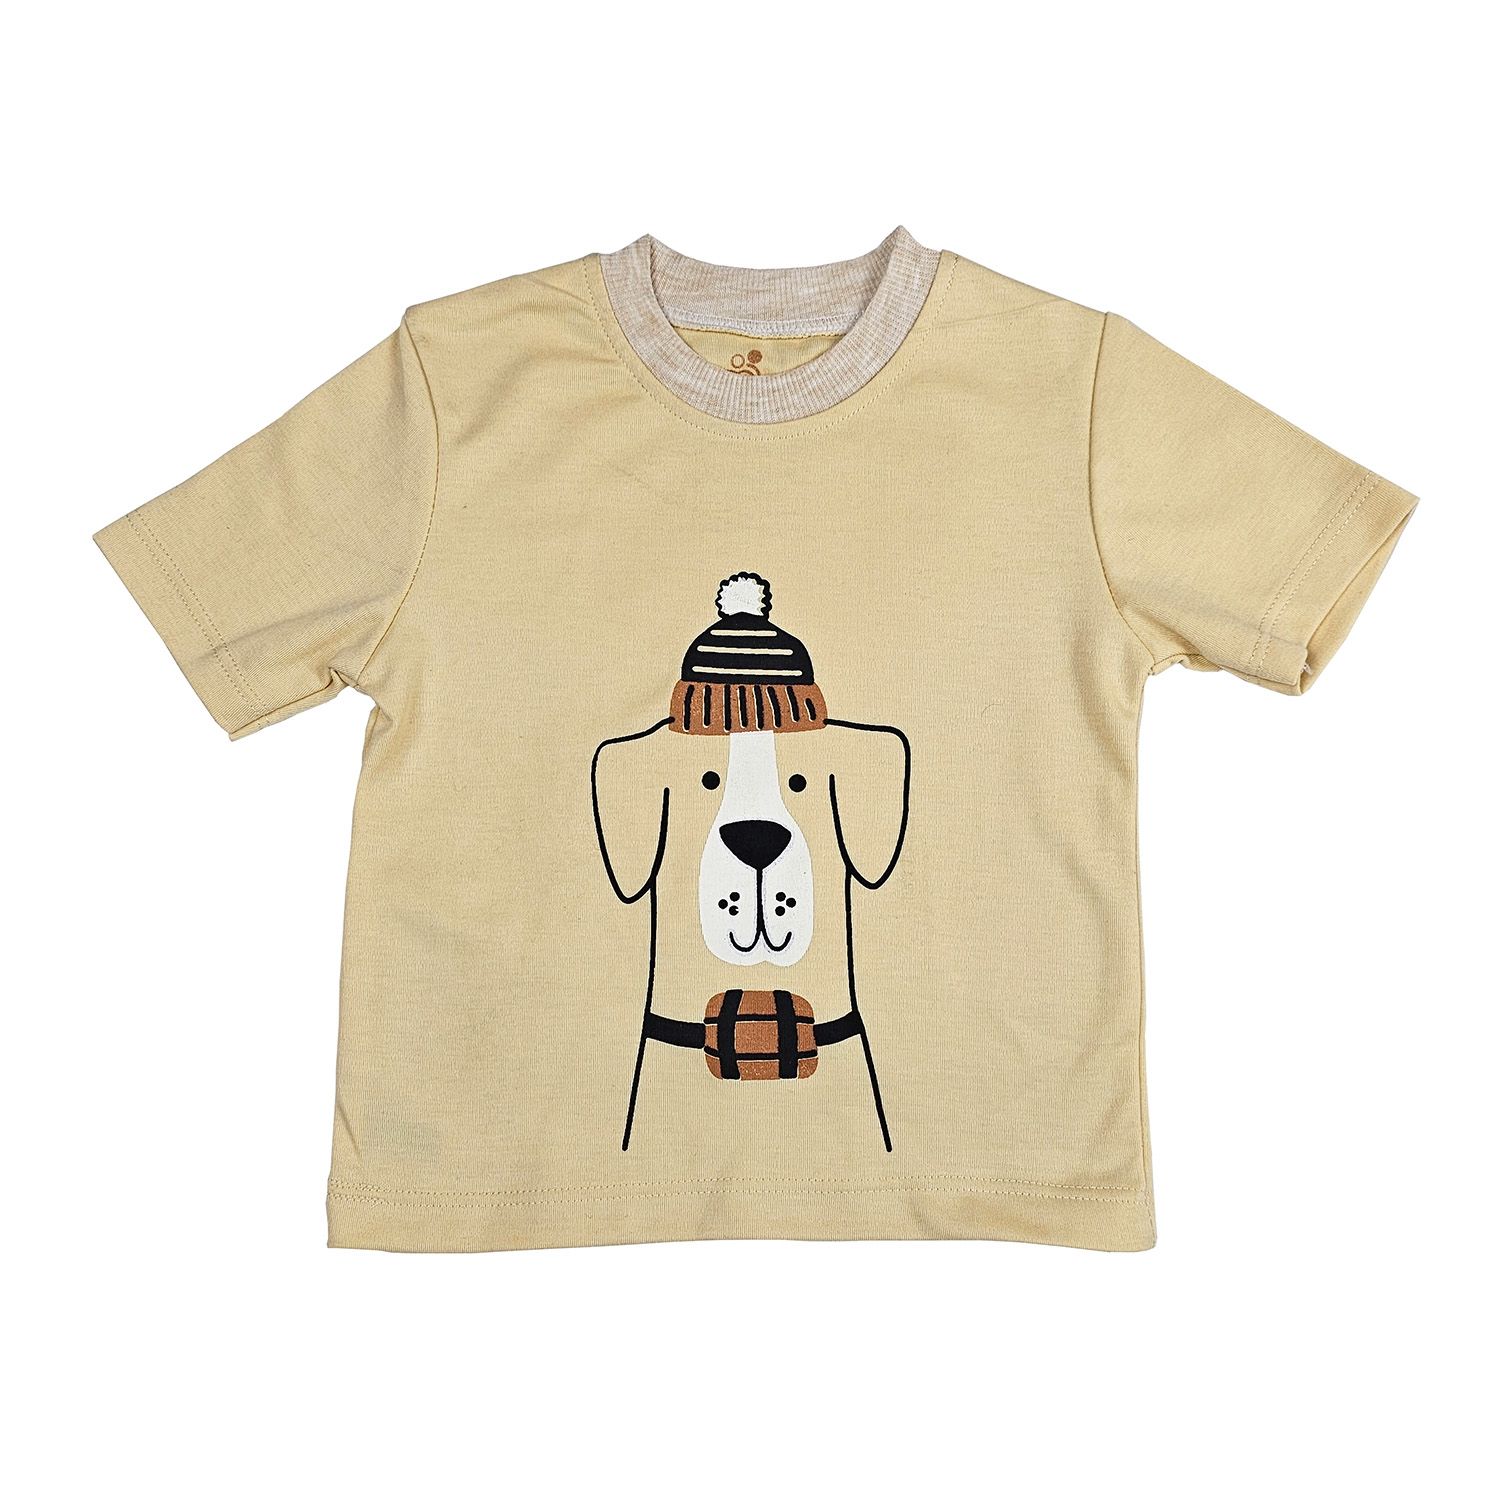 ست تی شرت آستین کوتاه و شلوارک بچگانه سپیدپوش مدل سگ کد 140240 -  - 3